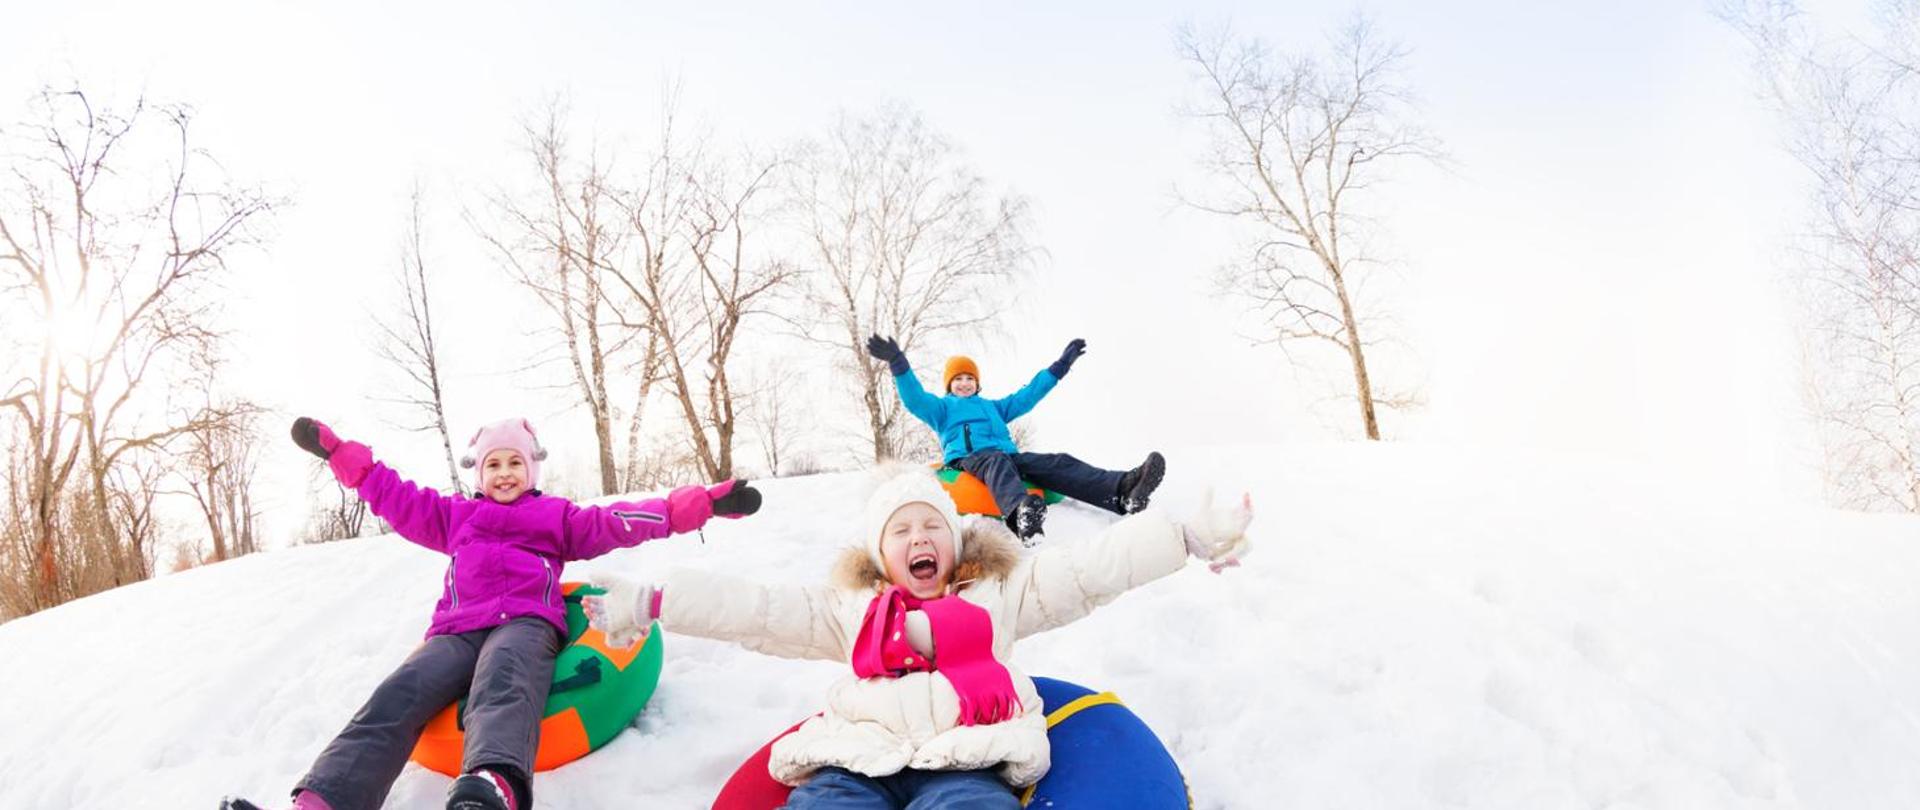 Grupa dzieci podczas zabaw na śniegu - zjazd z górki.